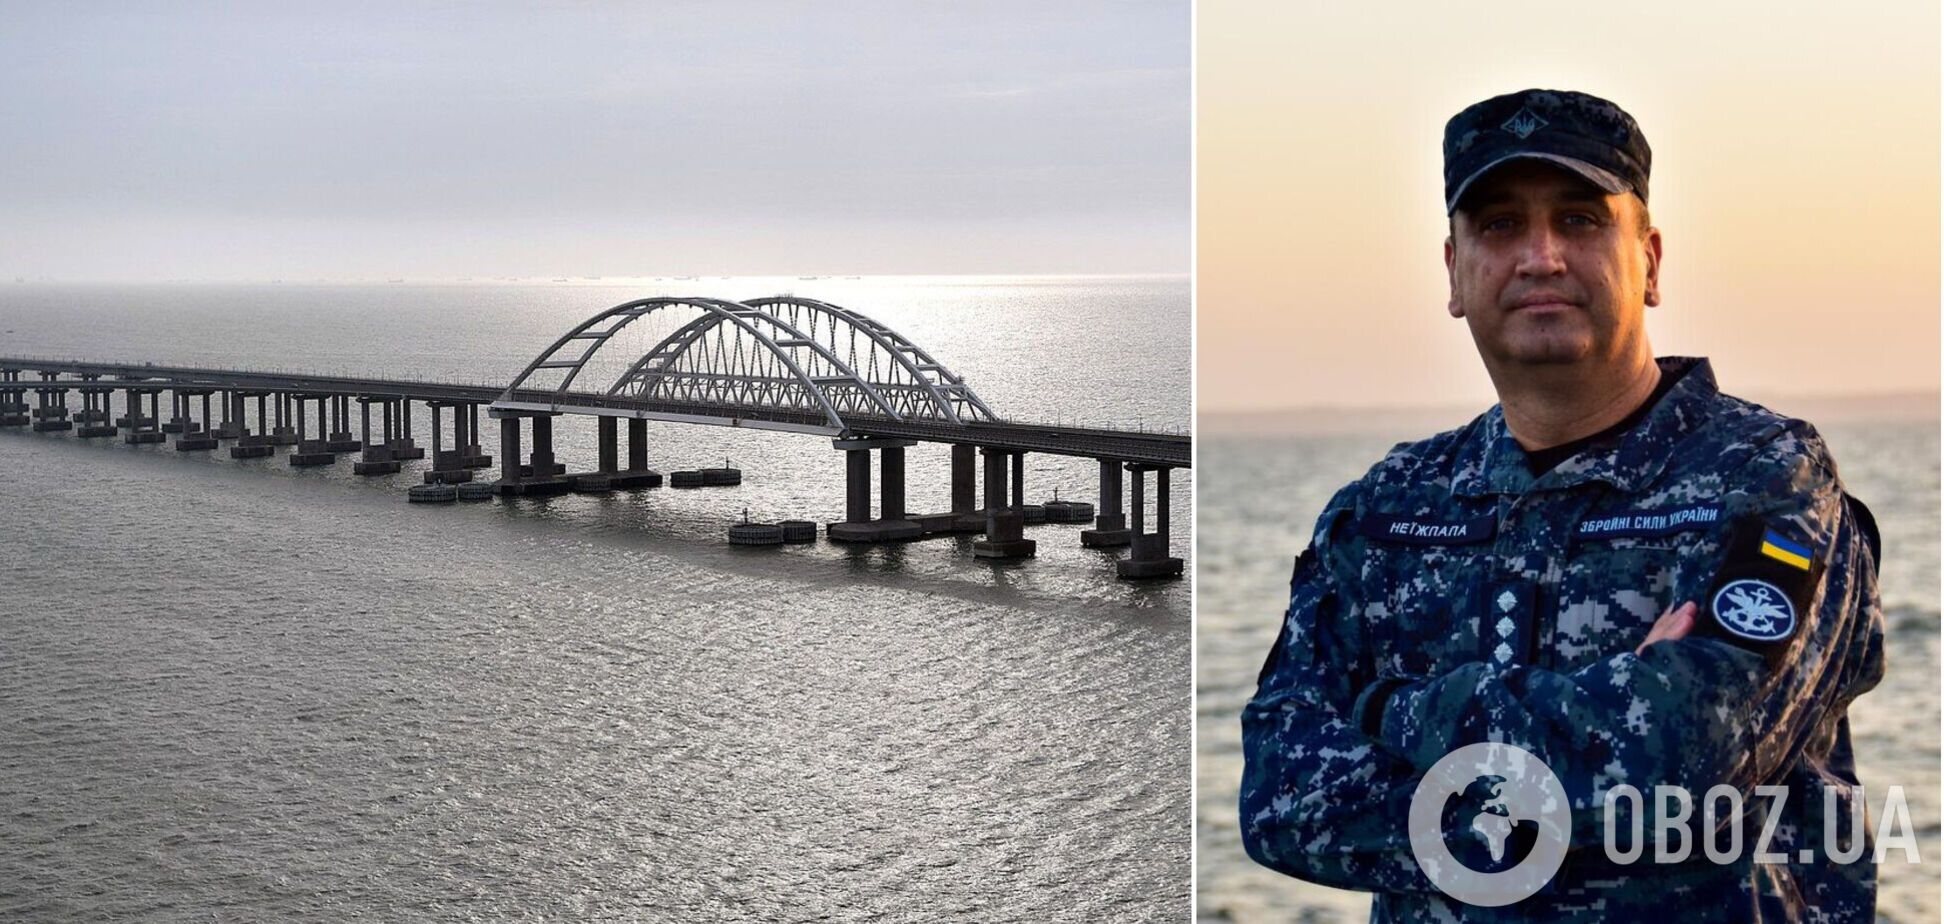 Неїжпапа впевнений, що Кримському мосту прийде кінець